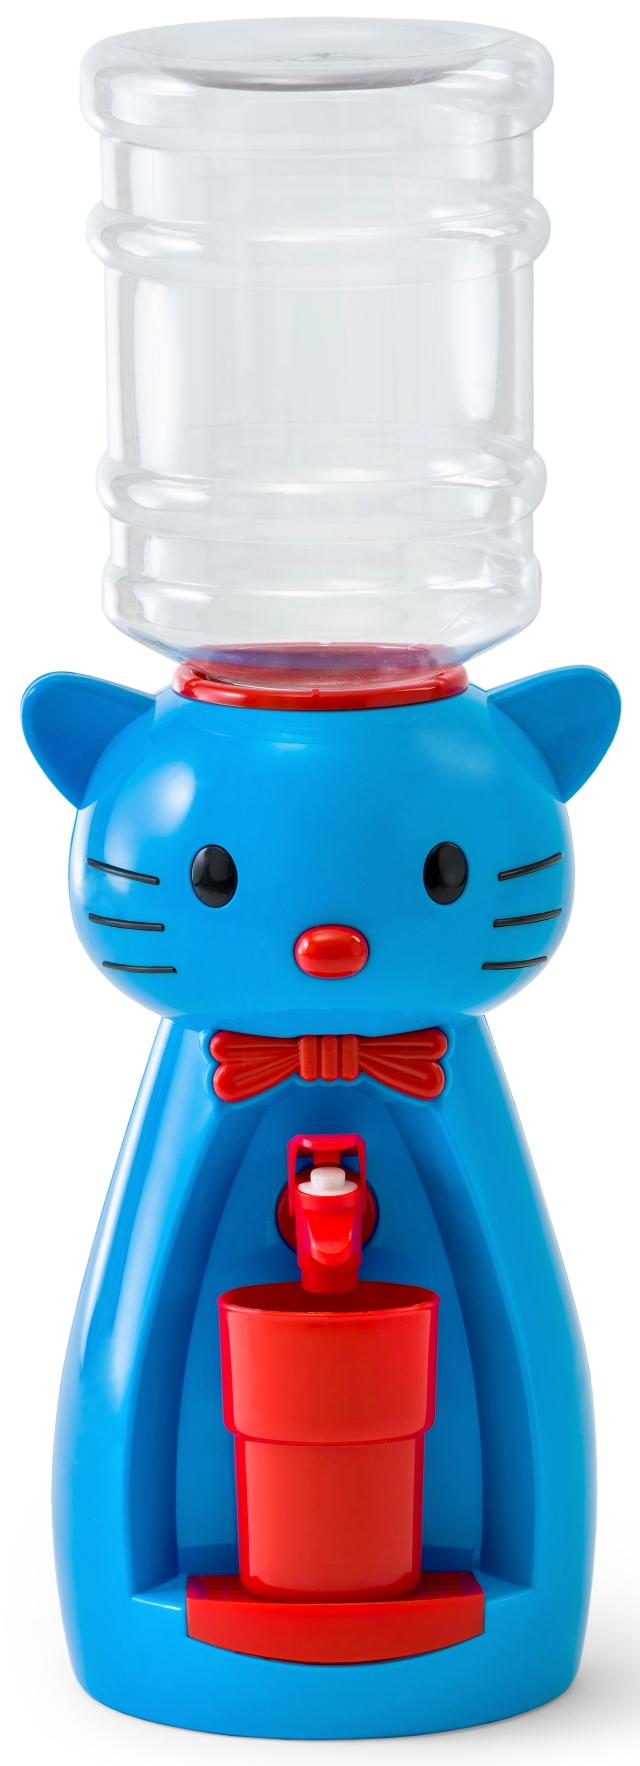 Детский кулер для воды VATTEN kids Kitty Blue по доступной цене в Москве от магазина "Море Воды"